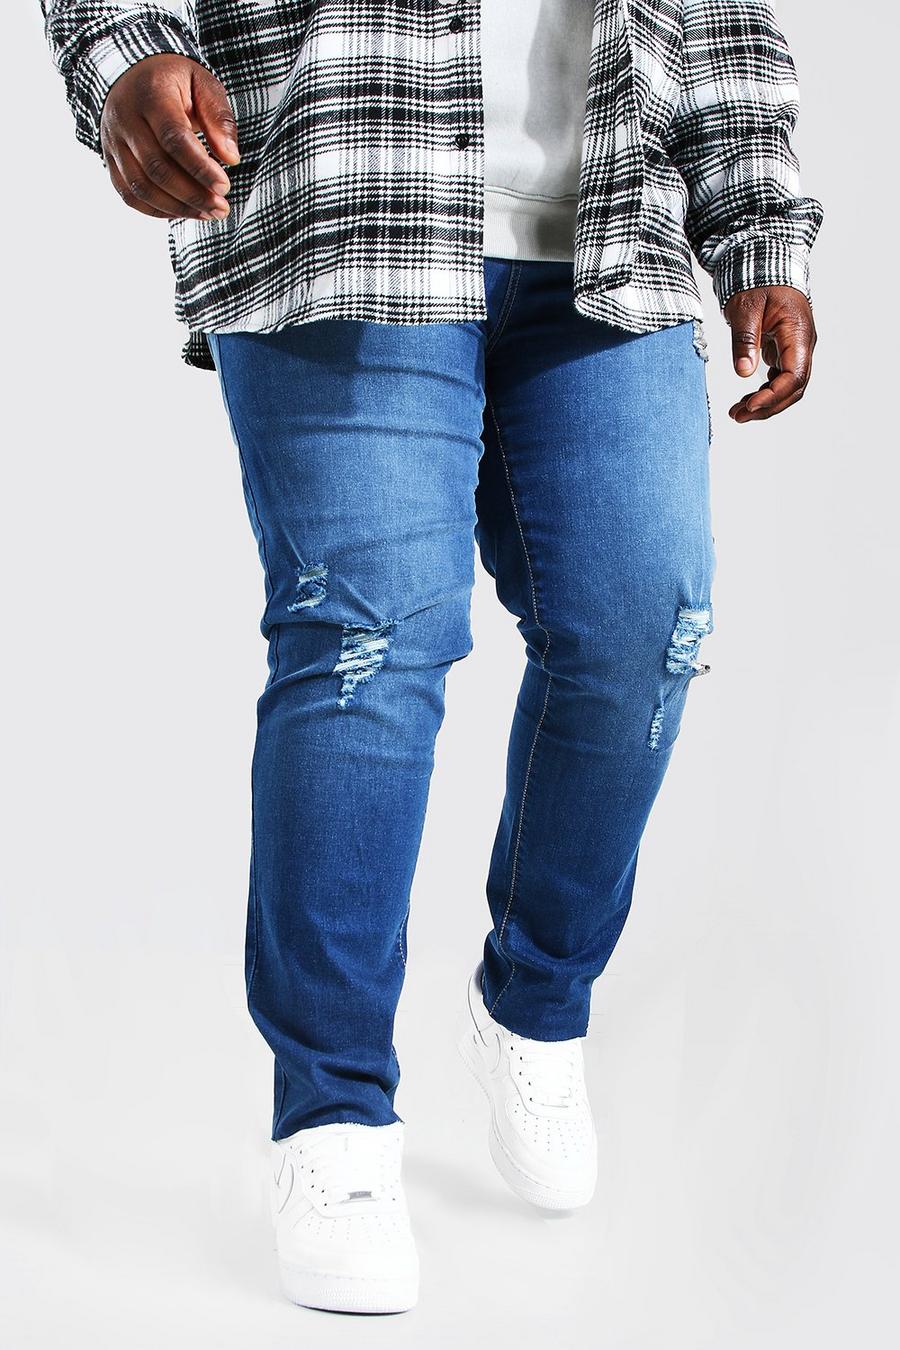 כחול ביניים מכנסי ג'ינס בגזרת סקיני עם מכפלת פרומה לגברים גדולים וגבוהים image number 1